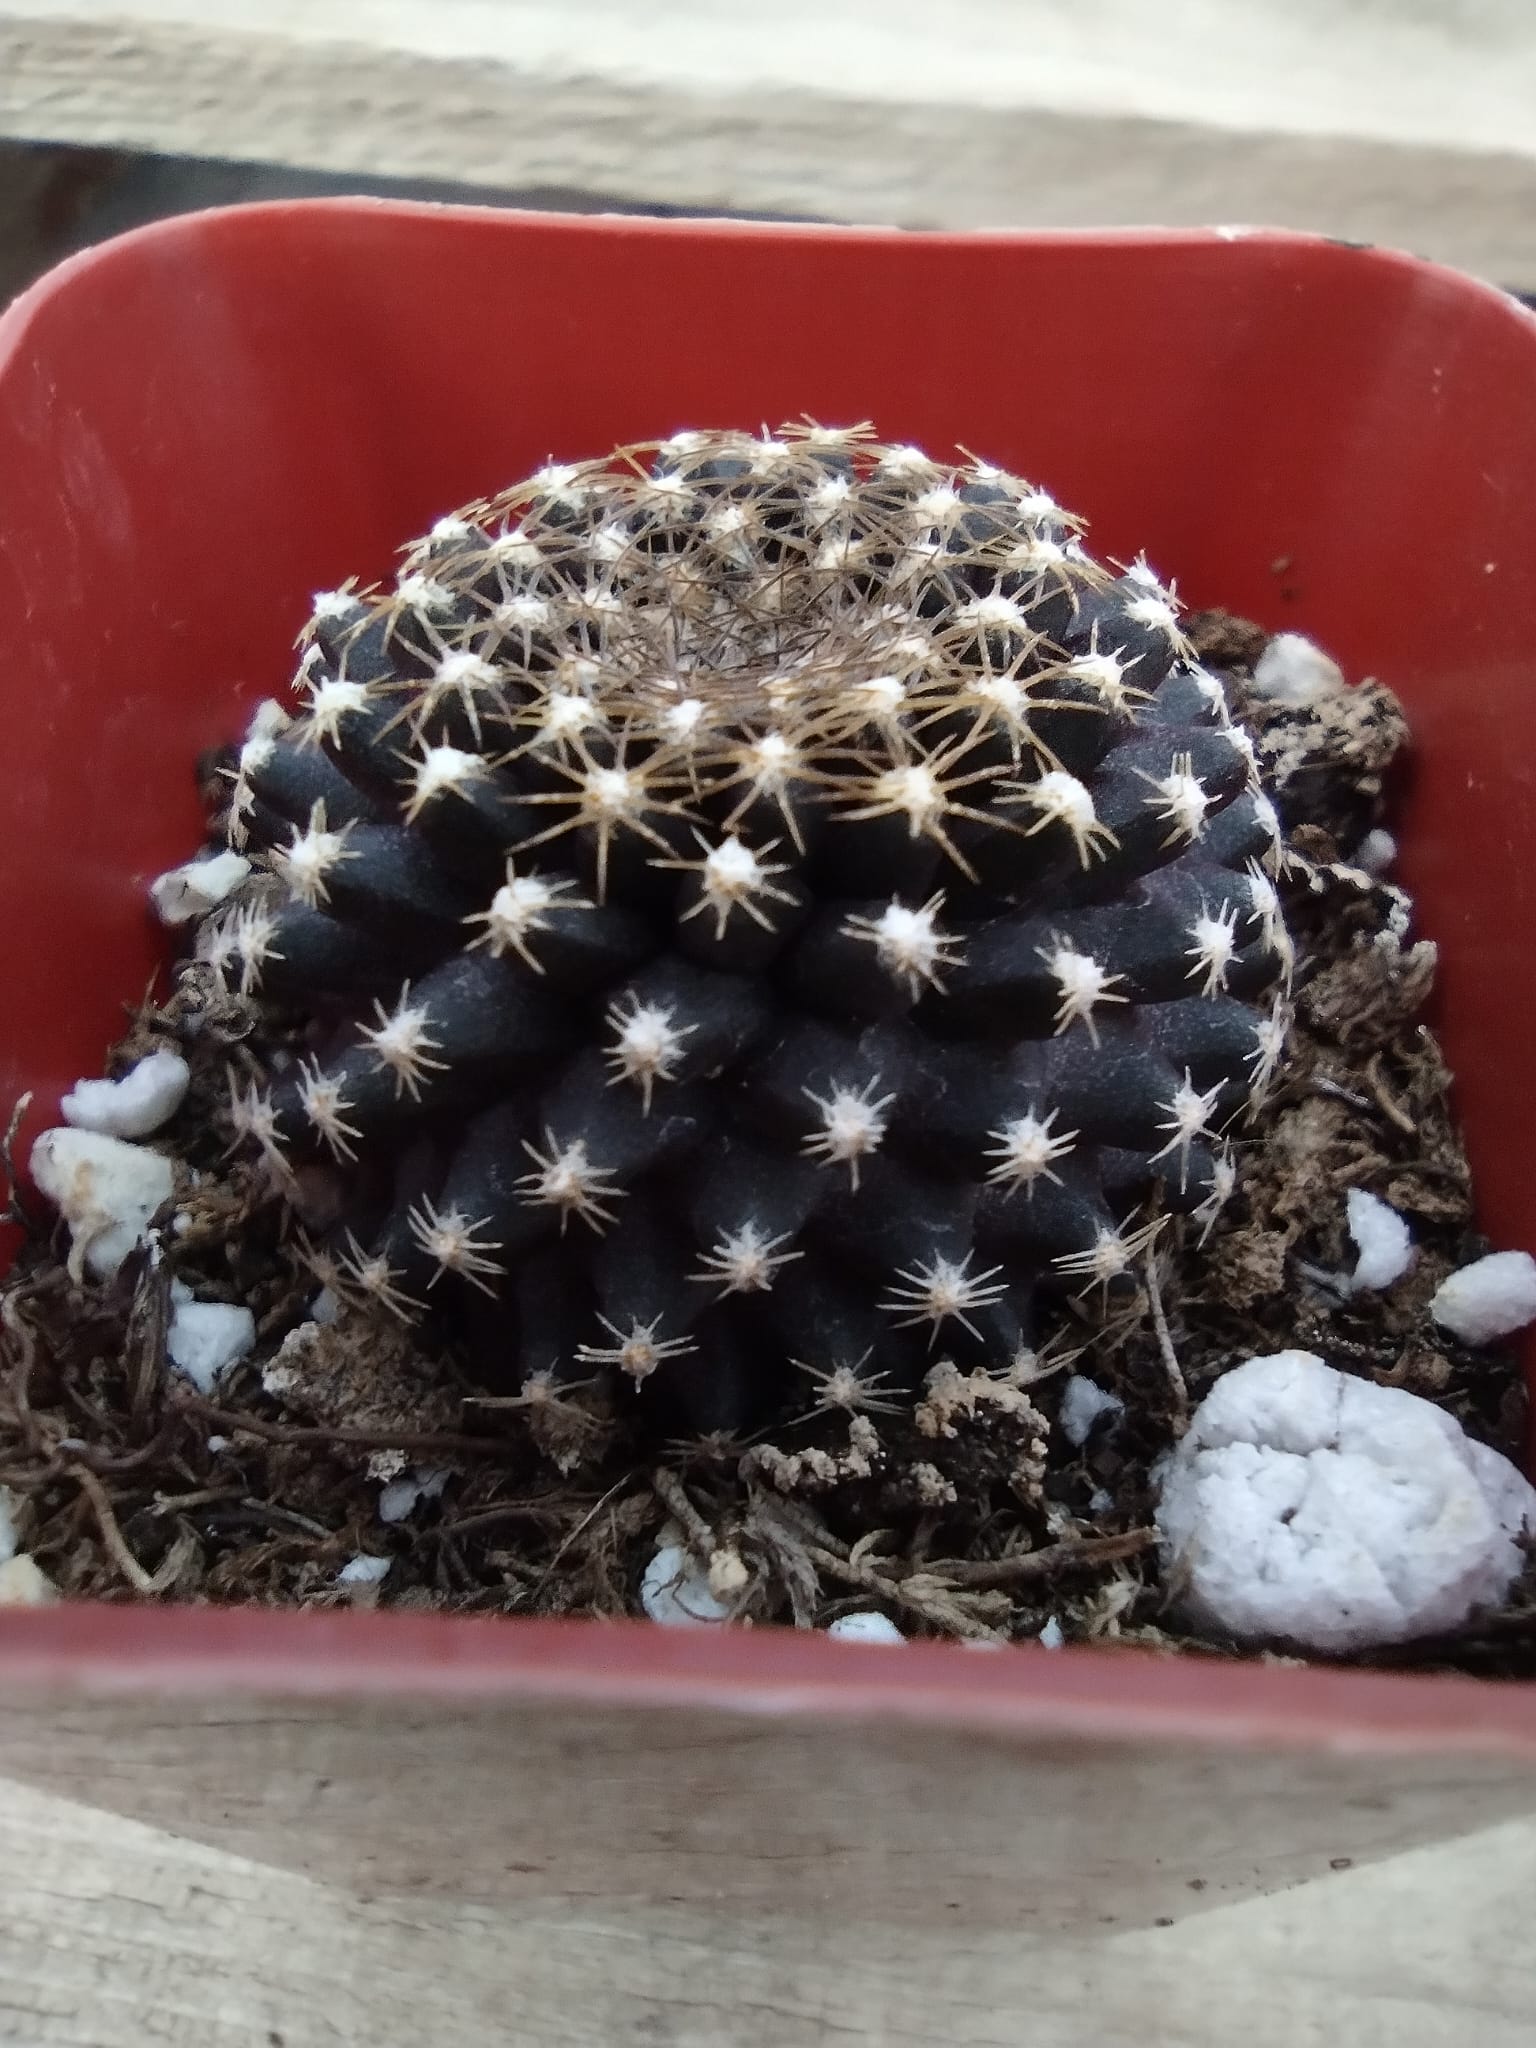 34c Copiapoa Tenuissima-Cactus - Small - Exact Type-The Succulent Source